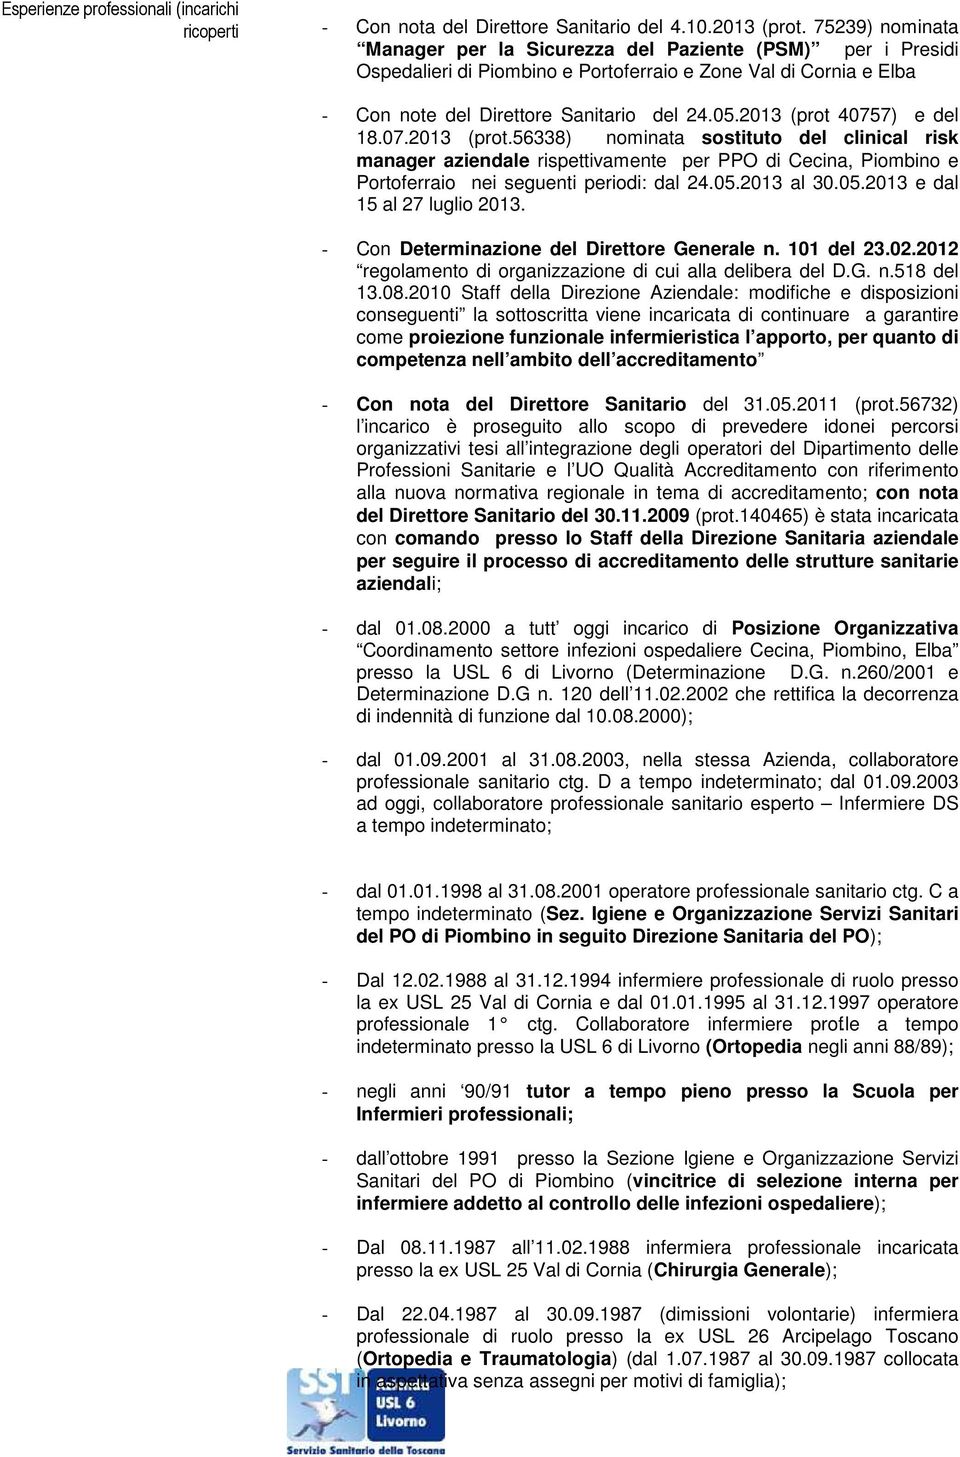 2013 (prot 40757) e del 18.07.2013 (prot.56338) nominata sostituto del clinical risk manager aziendale rispettivamente per PPO di Cecina, Piombino e Portoferraio nei seguenti periodi: dal 24.05.